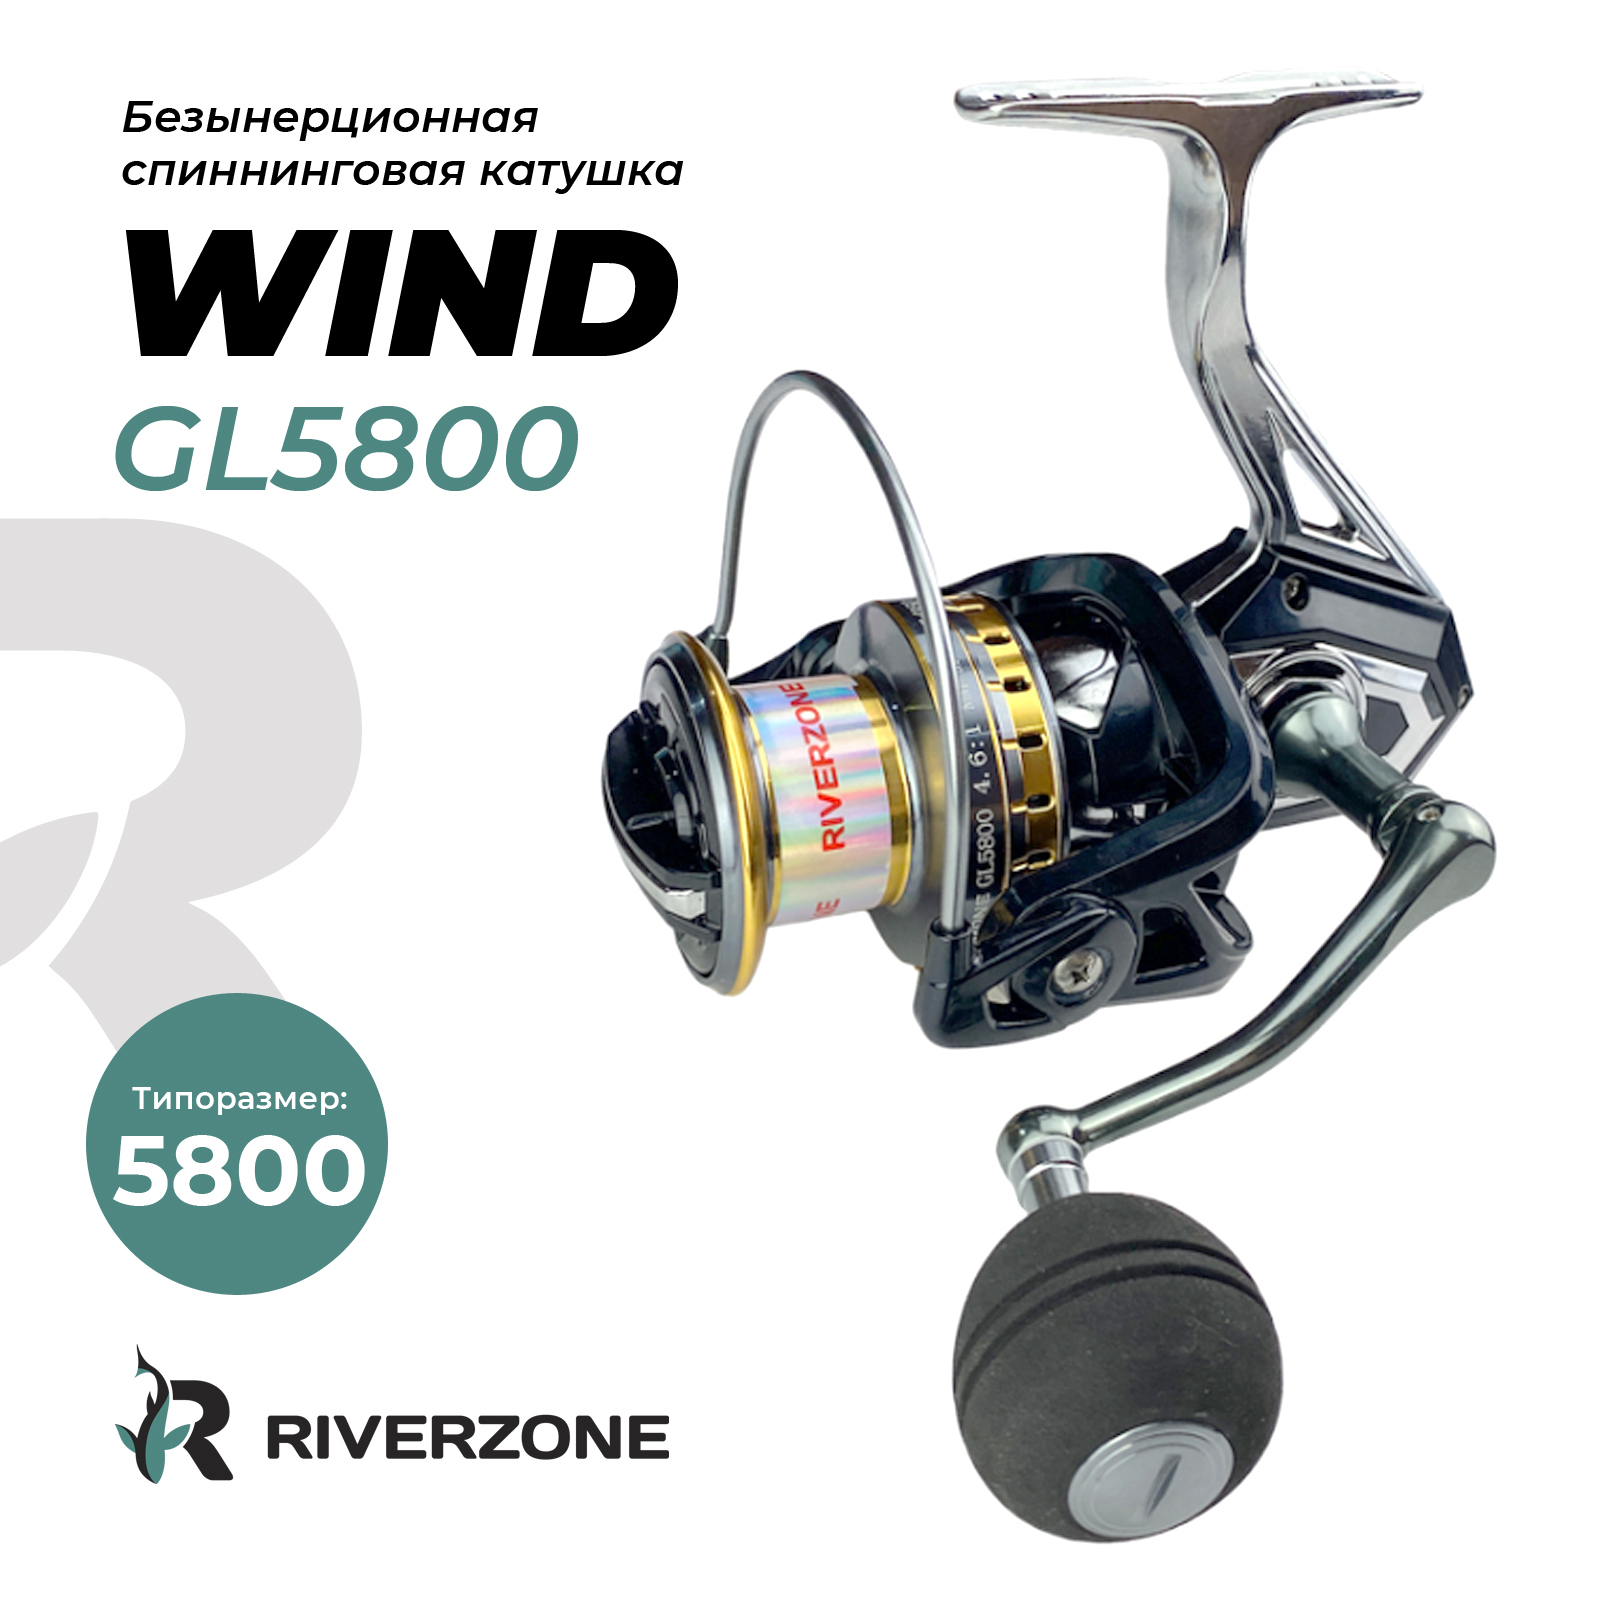 Катушка Riverzone Wind GL5800 - фото 1